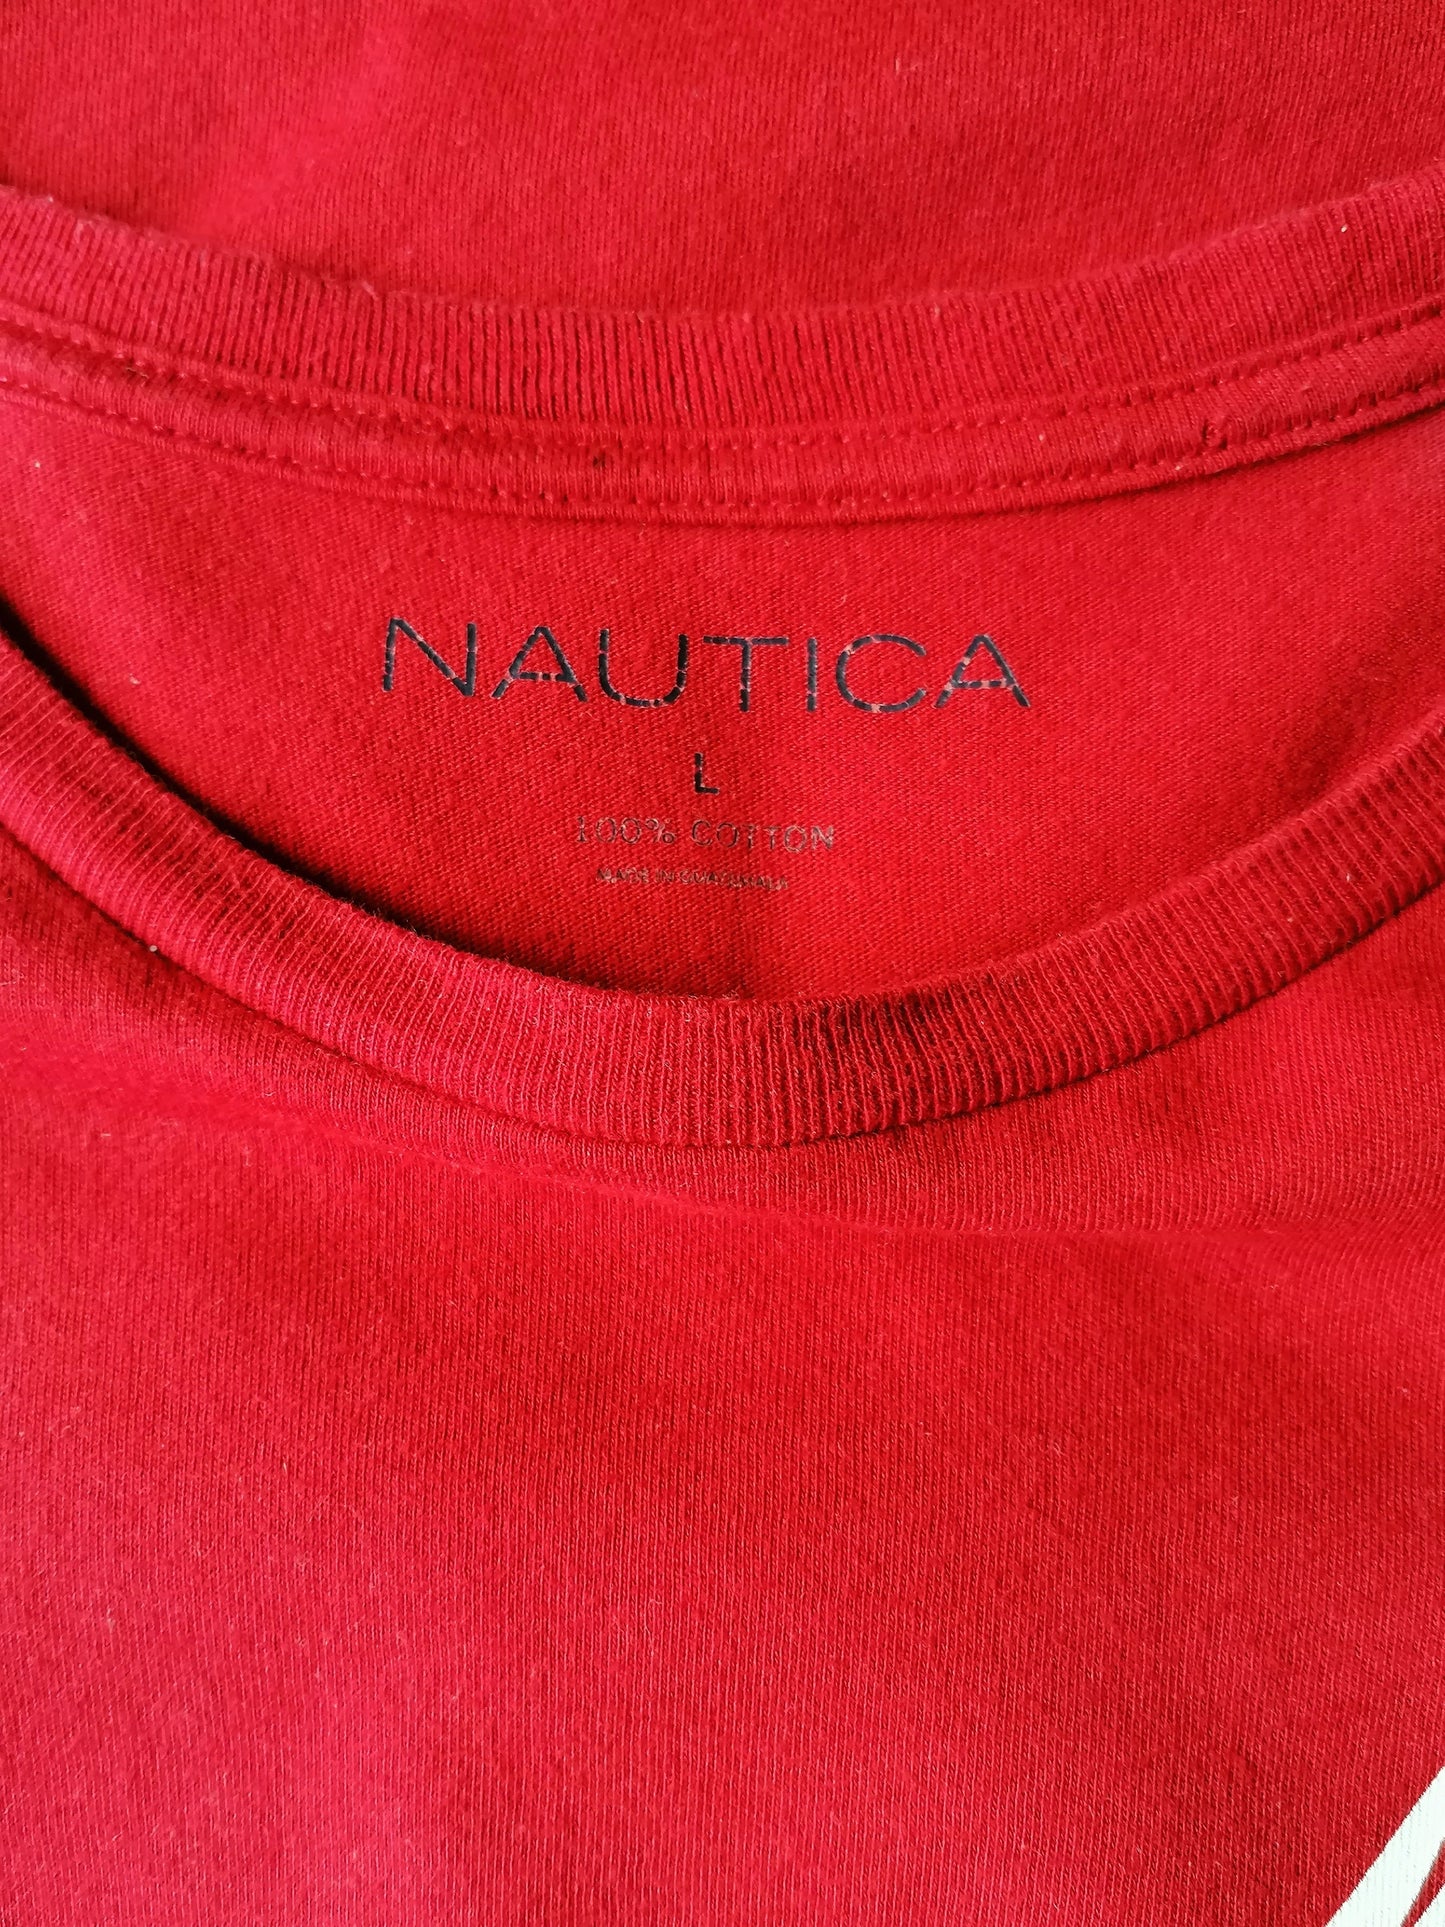 Nautica shirt. Rood met opdruk. Maat L.